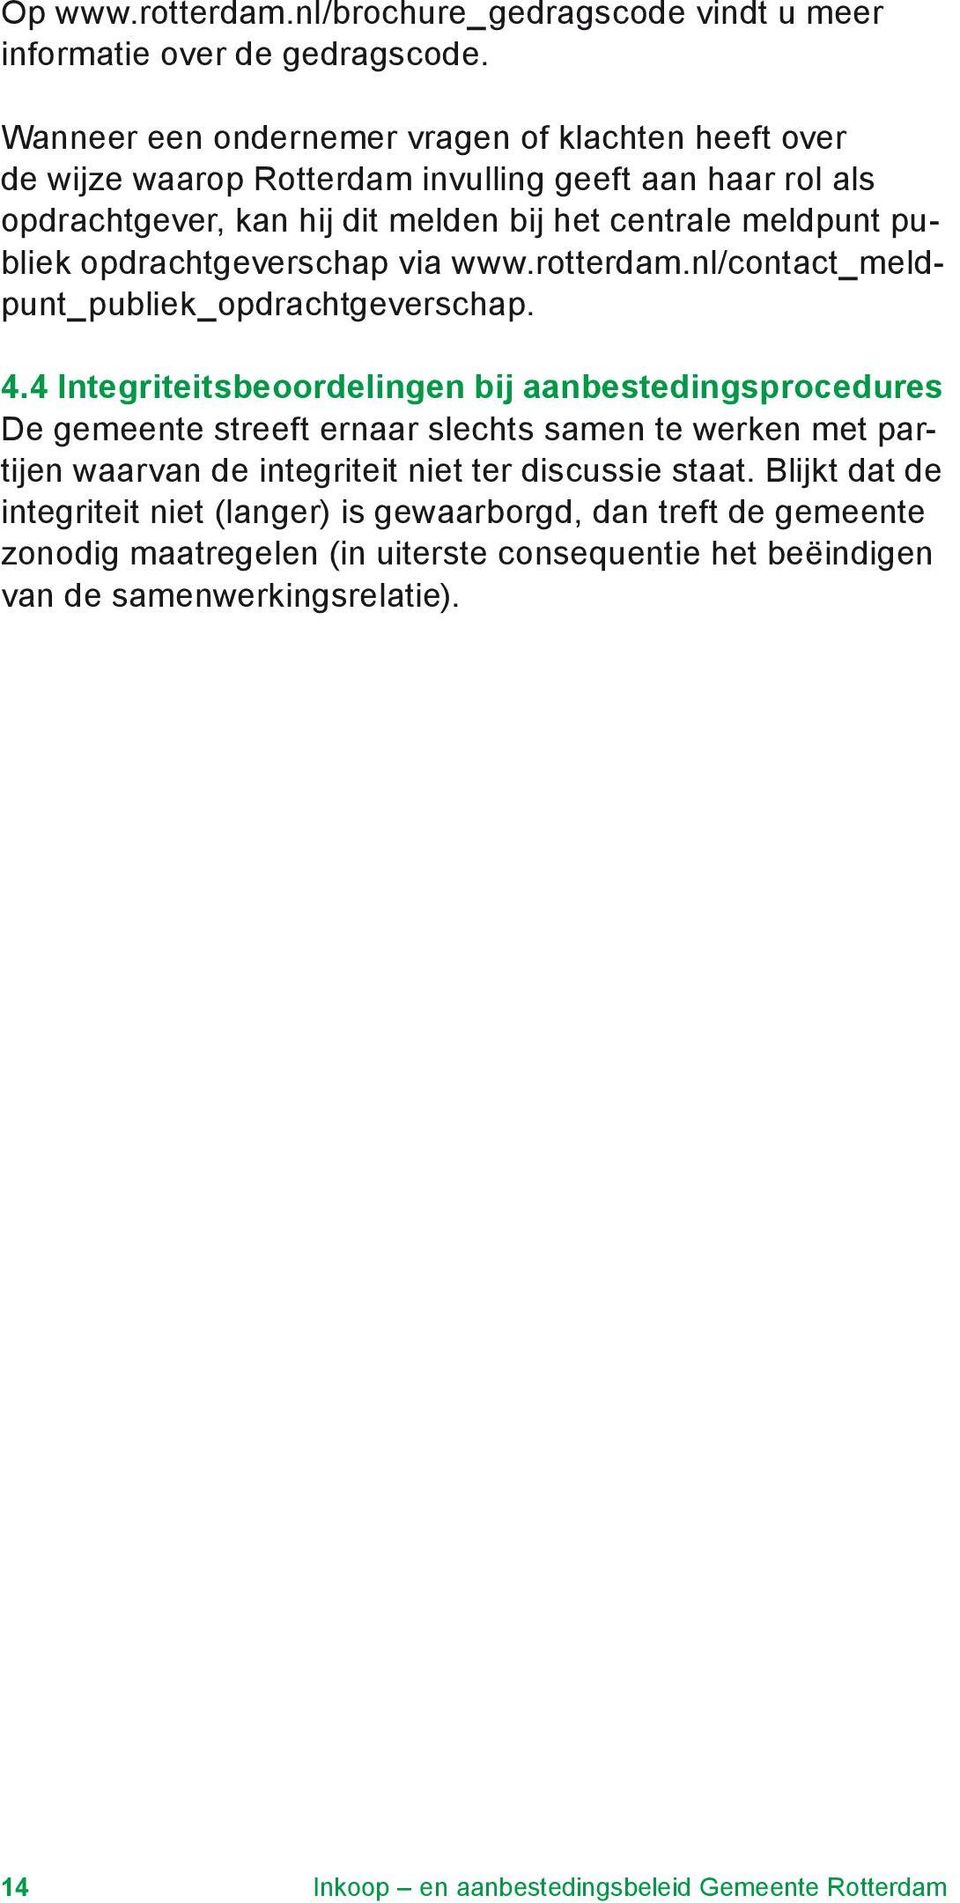 opdrachtgeverschap via www.rotterdam.nl/contact_meldpunt_publiek_opdrachtgeverschap. 4.